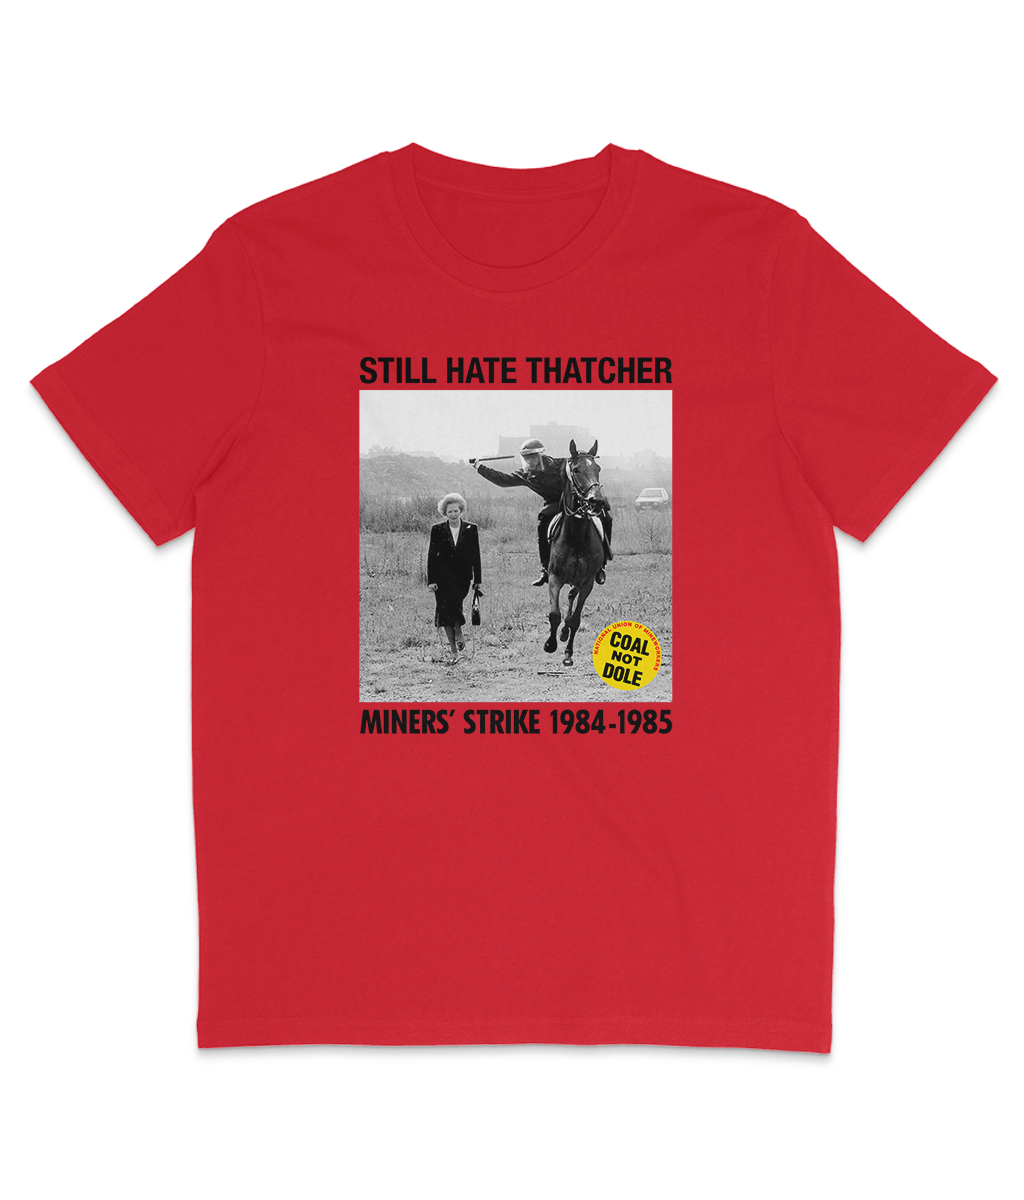 STILL HATE THATCHER - Miners' Strike 1984-1985 - Black Text